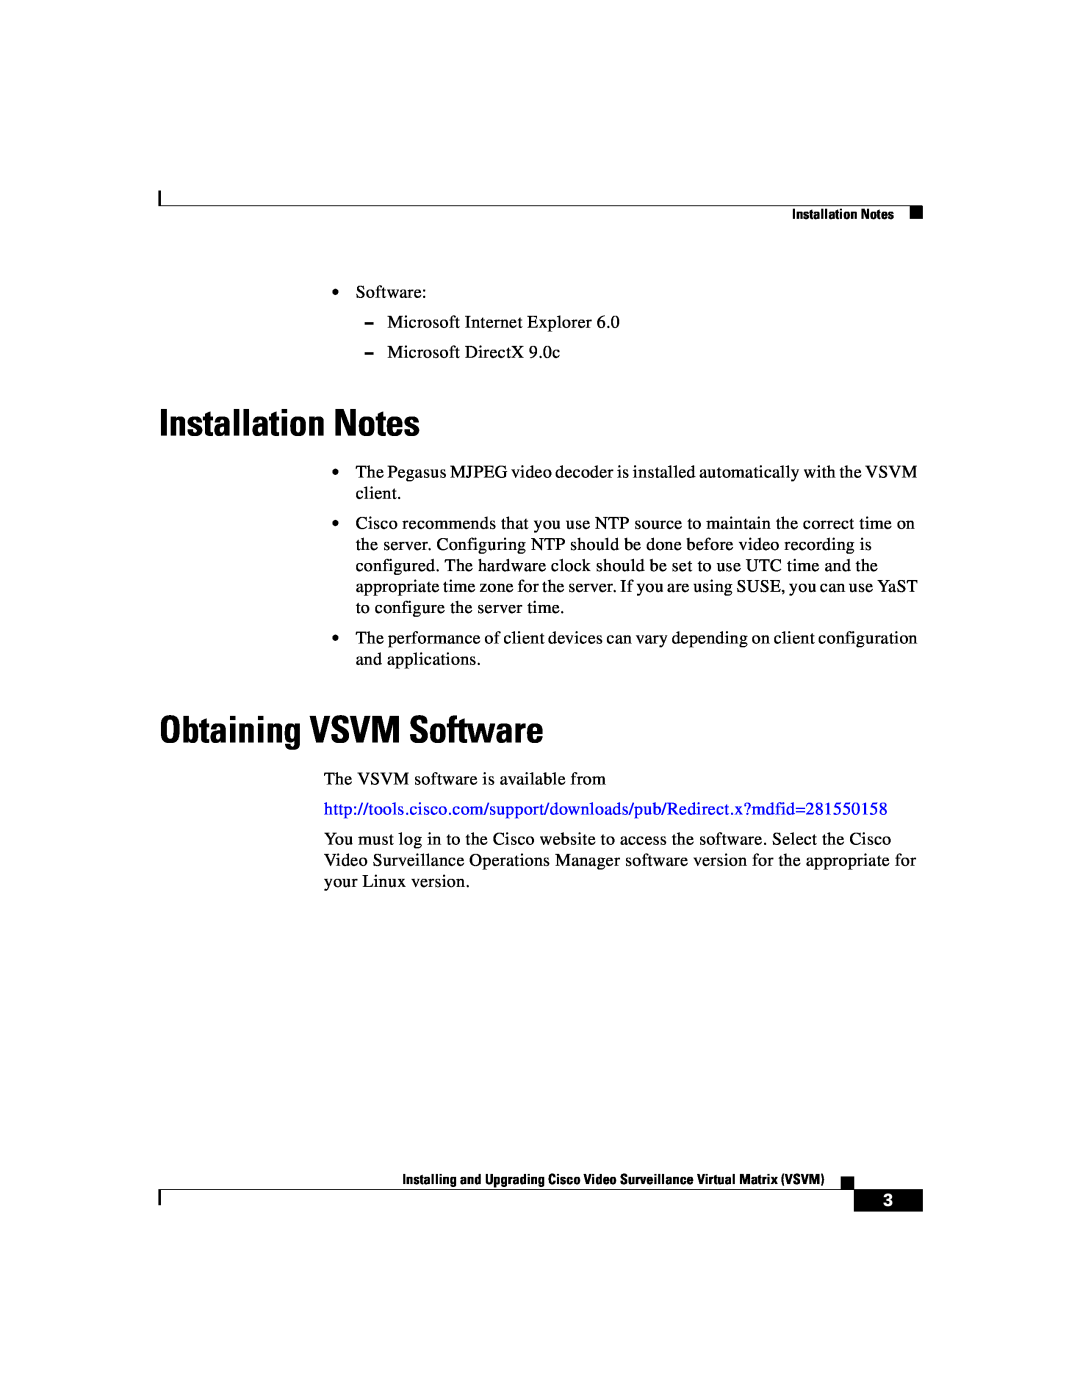 Cisco Systems manual Installation Notes, Obtaining VSVM Software 